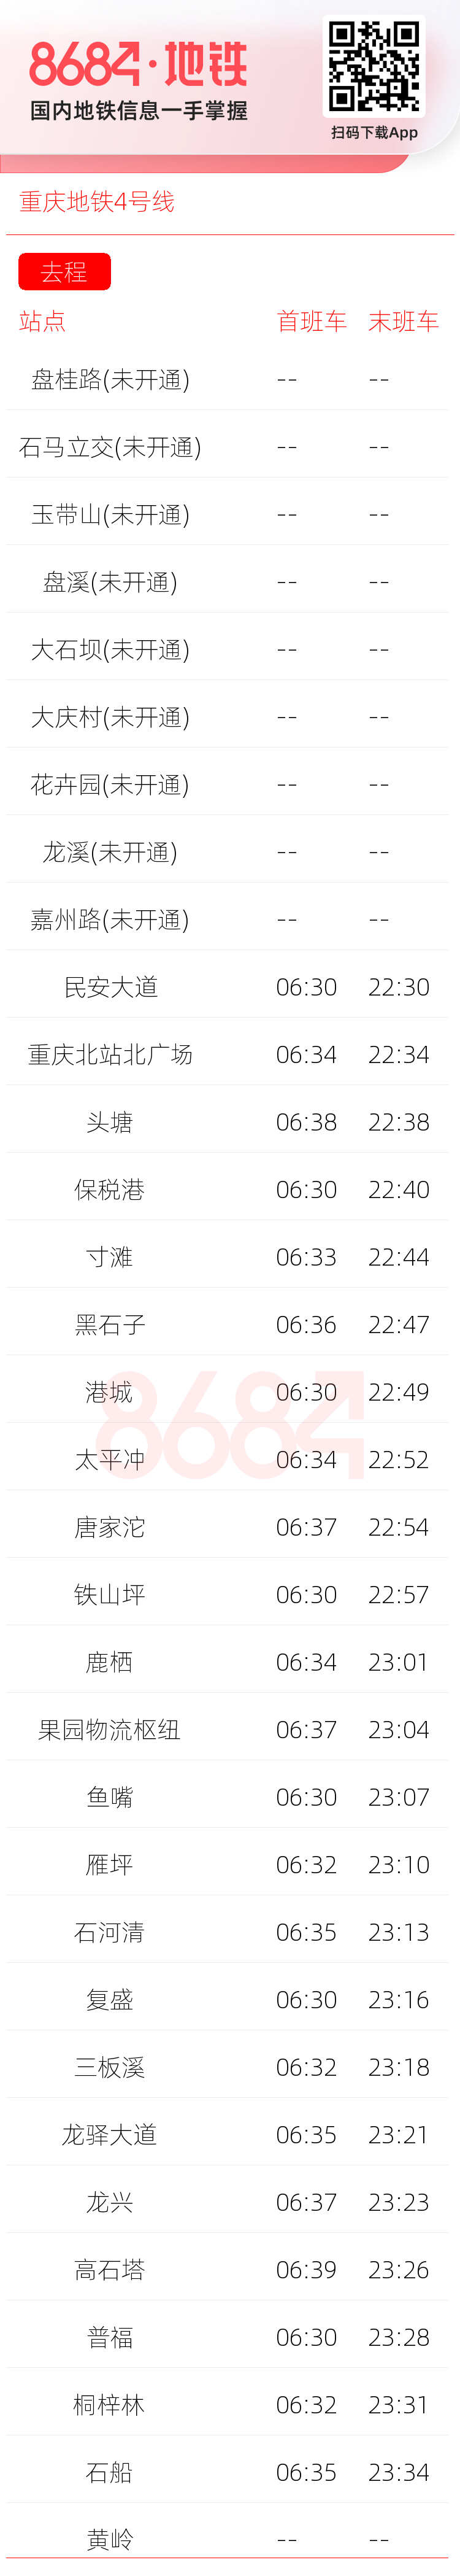 重庆地铁4号线运营时间表